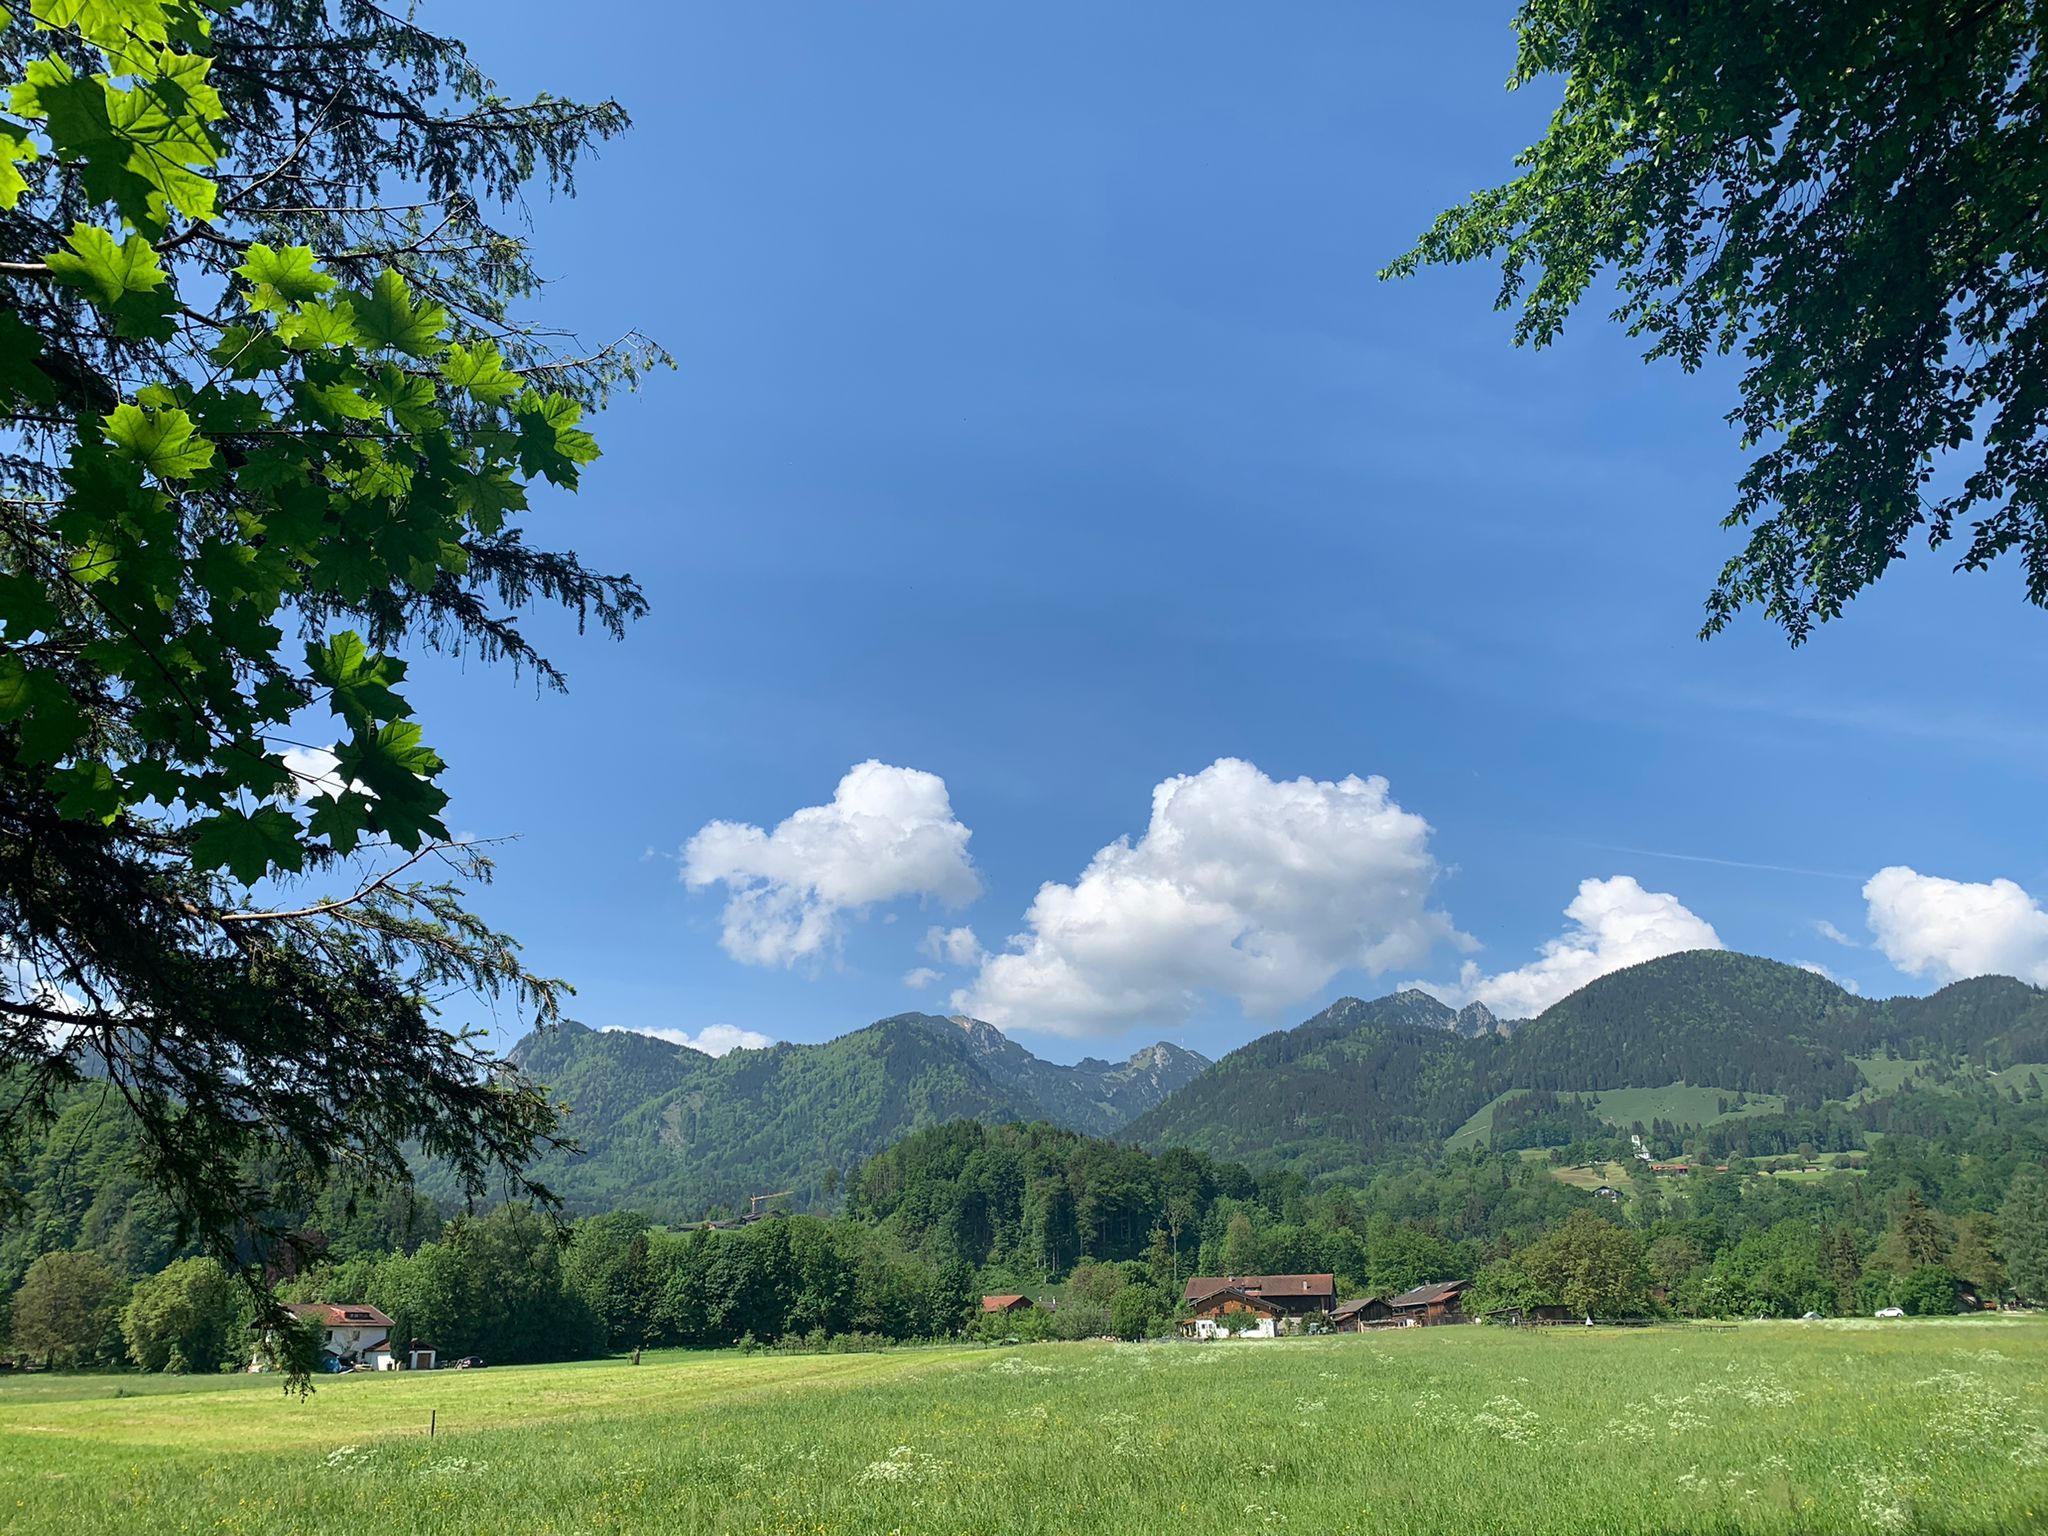 Brannenburg - links und rechts grüne Bäume. Blick auf Wiese, Berge, Blauer Himmel mit Schaefchenwolken